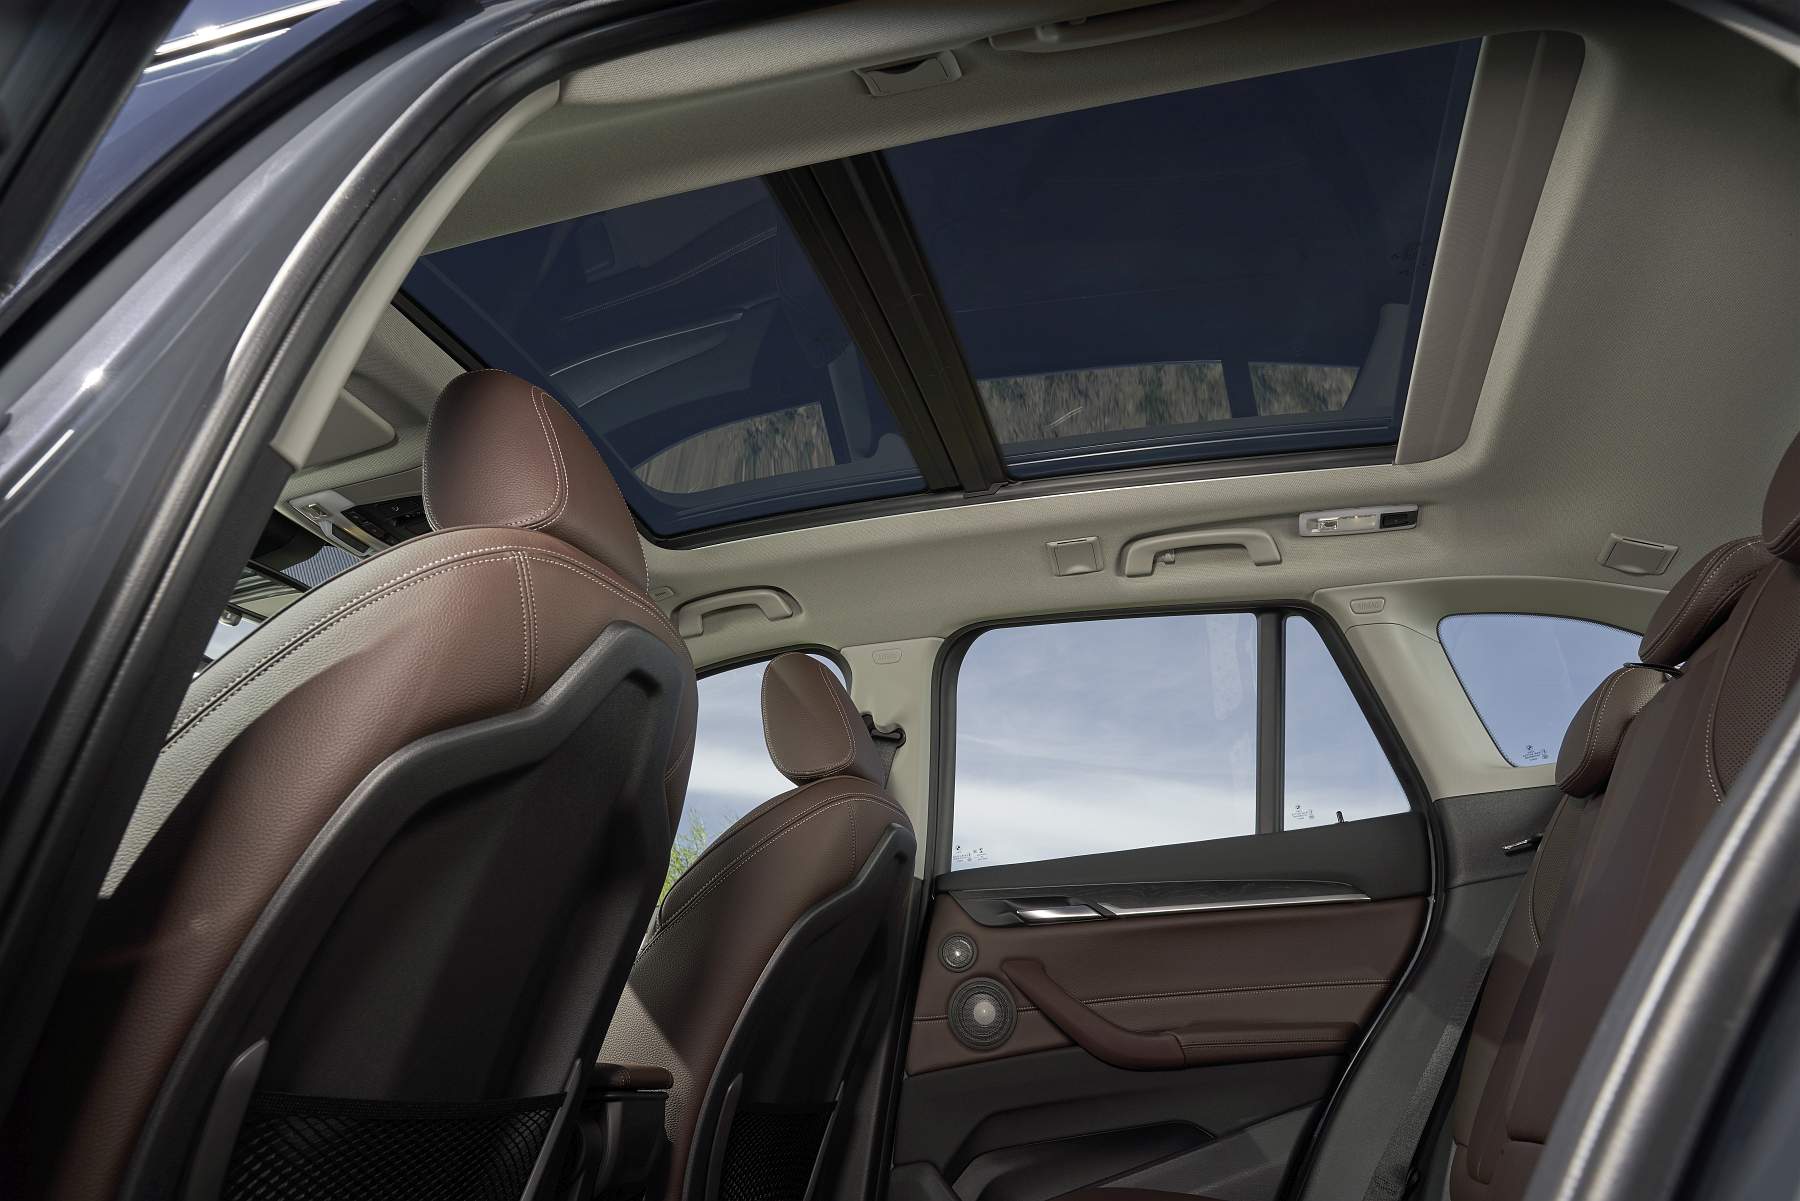 BMW X1 2019 interiores (7)